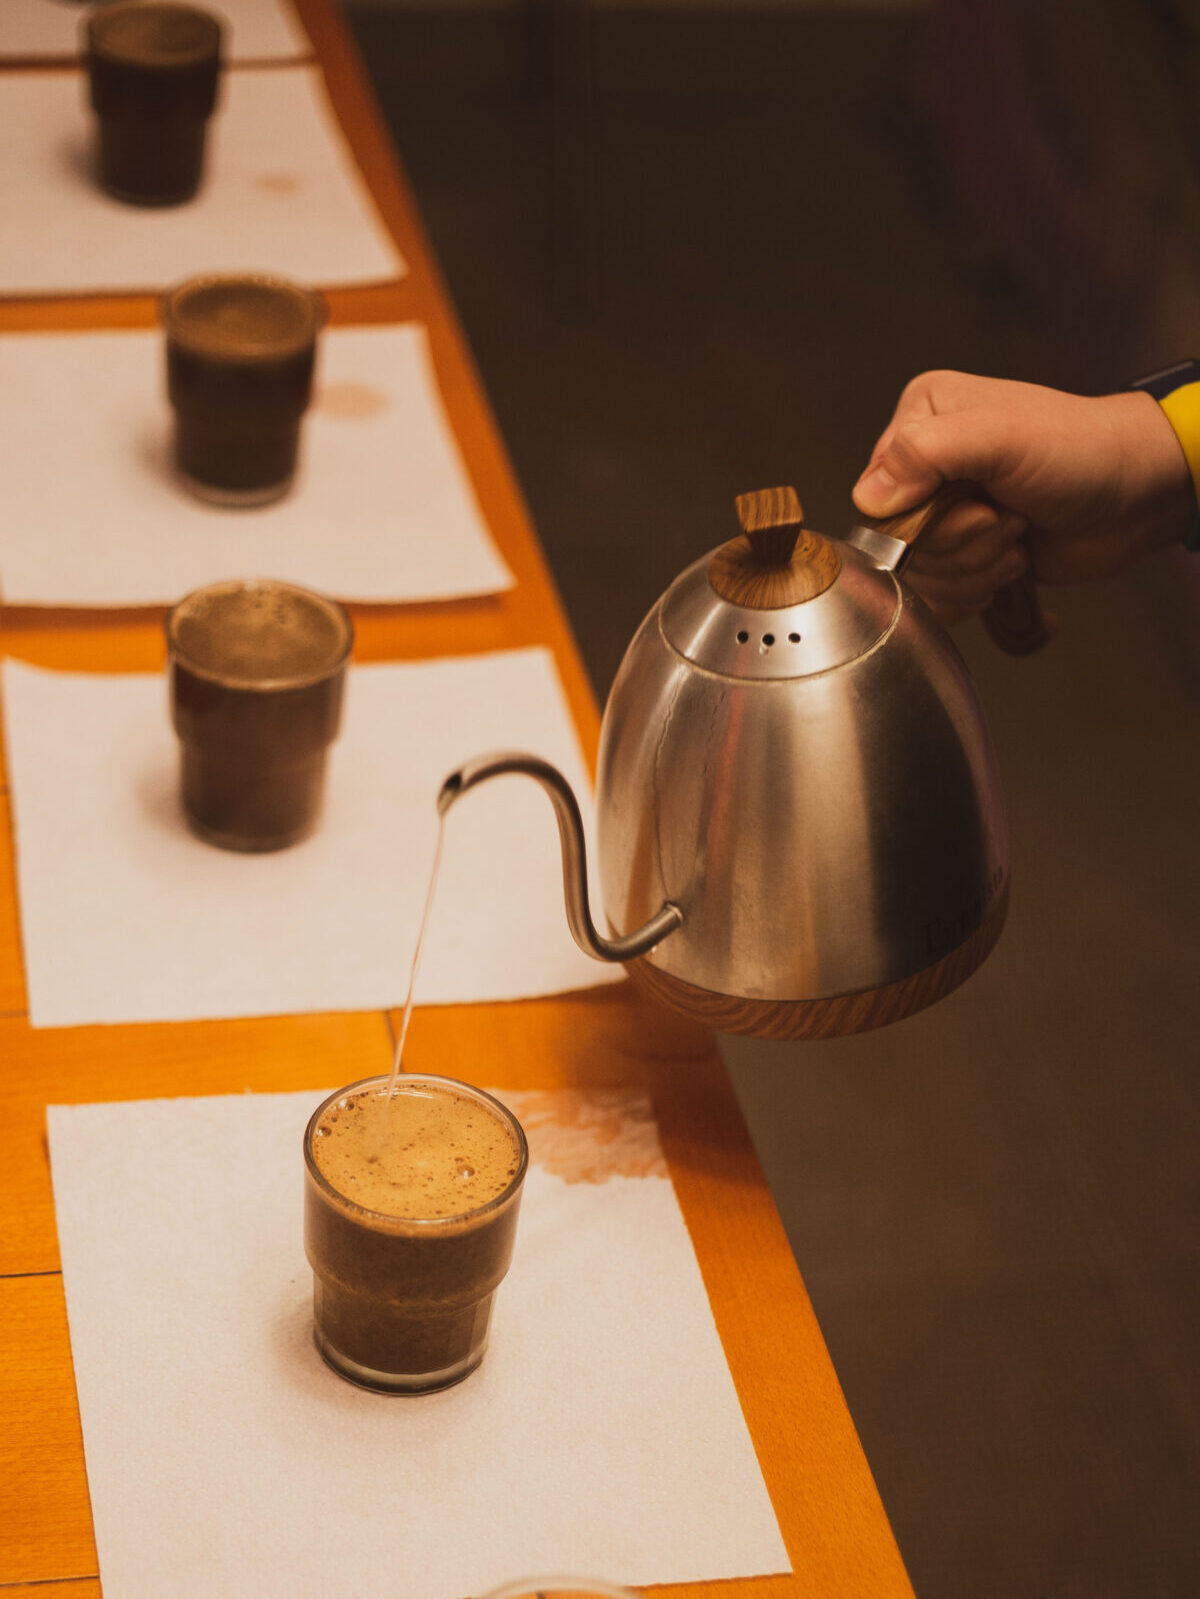 En hånd hælder varmt vand fra en svanehalskedel over kaffegrums i klare glaskopper.